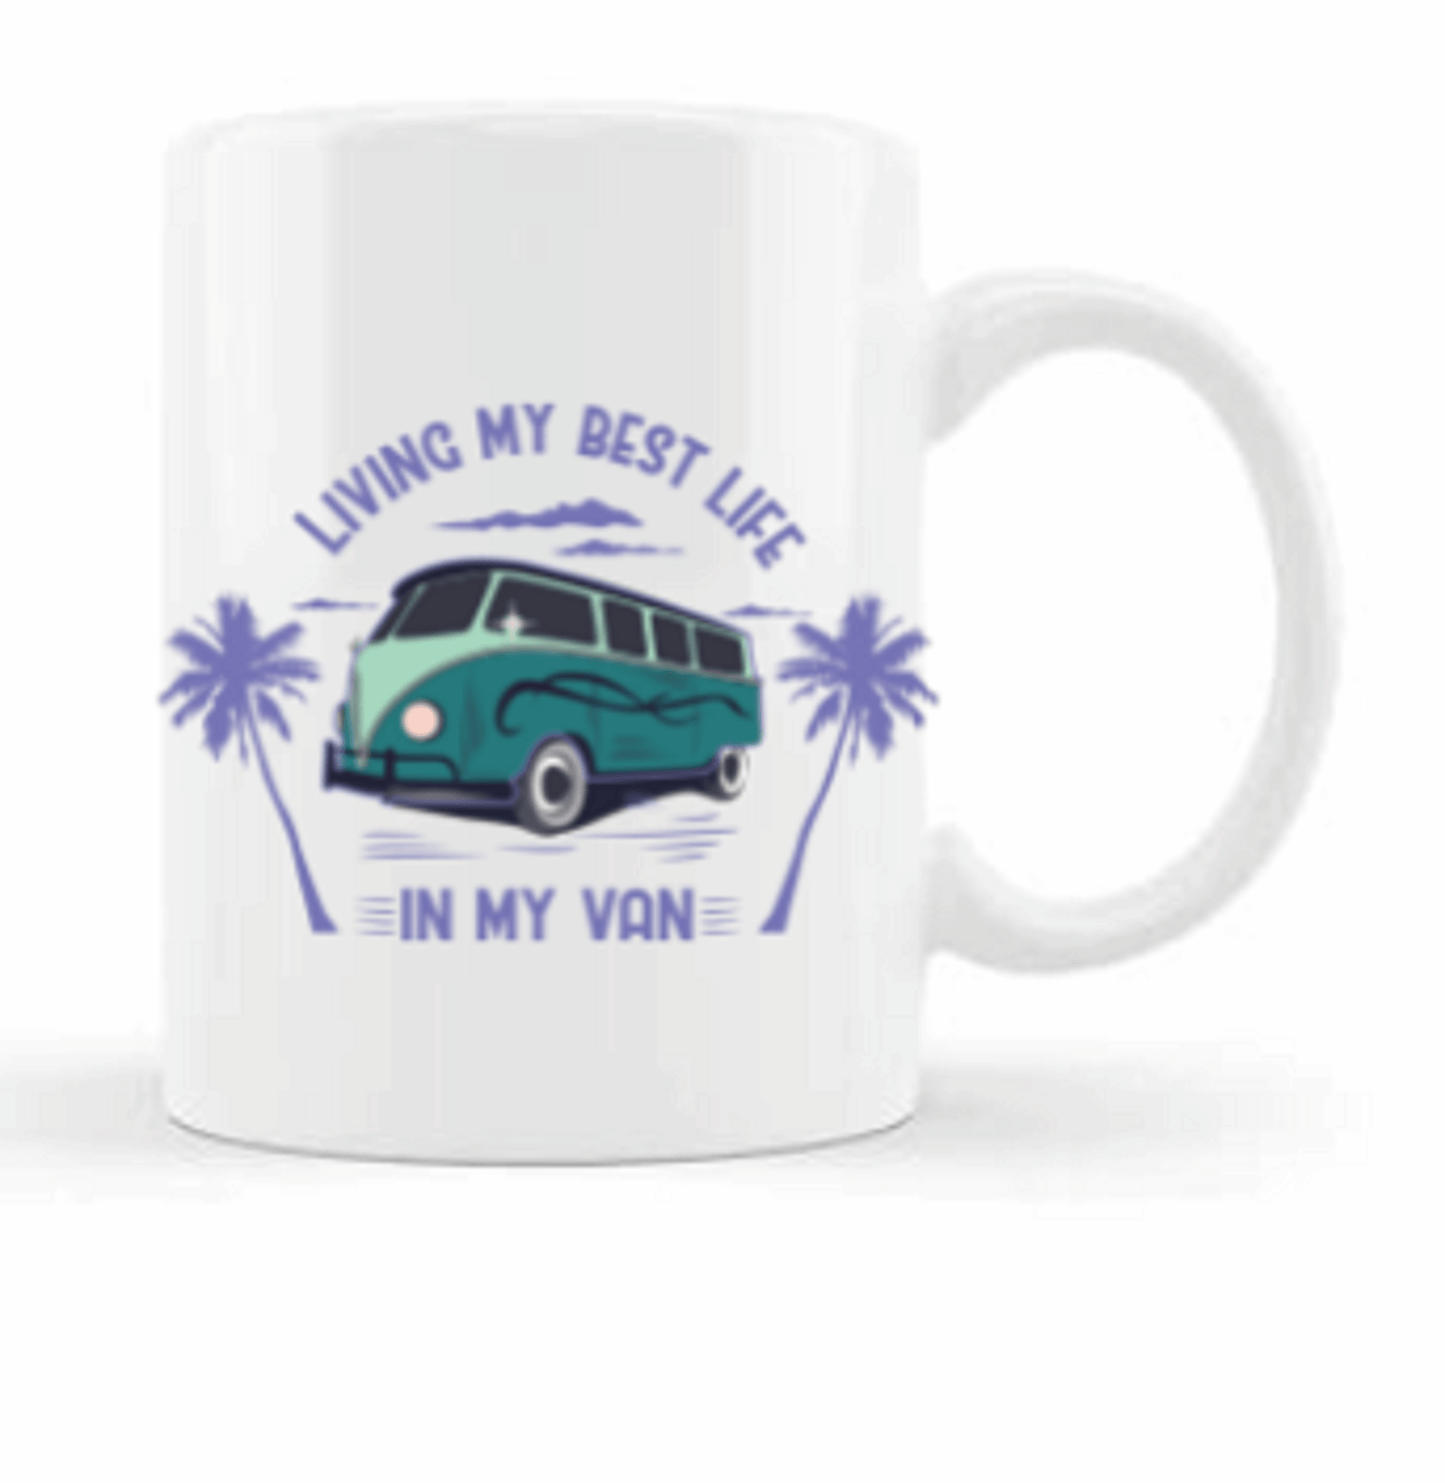  Living the Best Life in my Van Mug by Free Spirit Accessories sold by Free Spirit Accessories